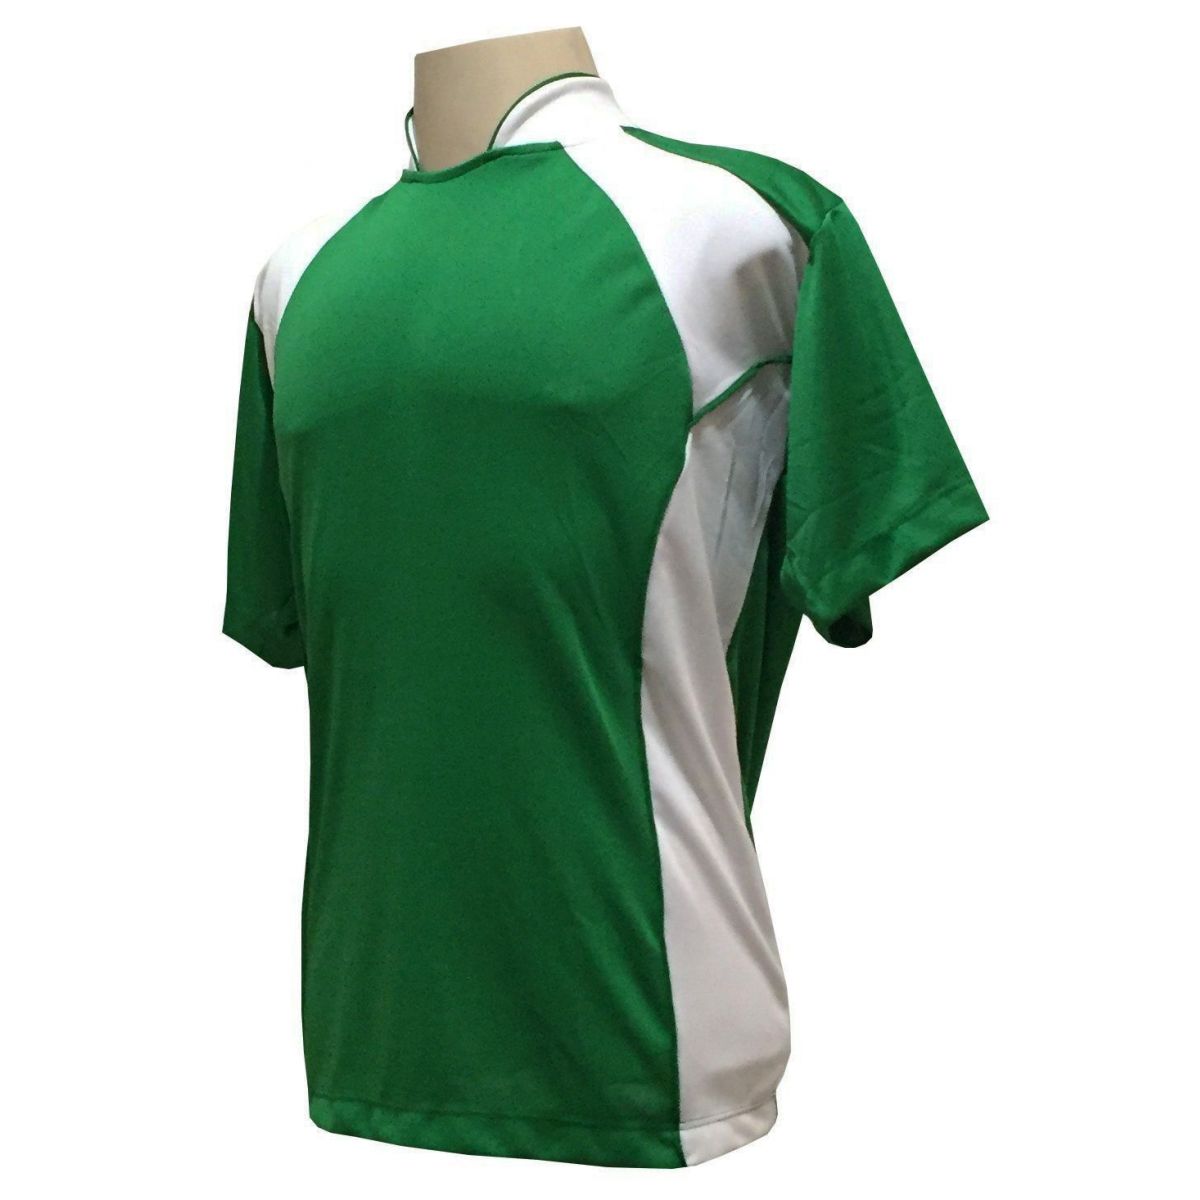 Uniforme Esportivo Completo modelo Suécia 14+1  (14 camisas Verde/Branco + 14 calções Madrid Verde + 14 pares de meiões Brancos + 1 conjunto de goleiro) + Brindes